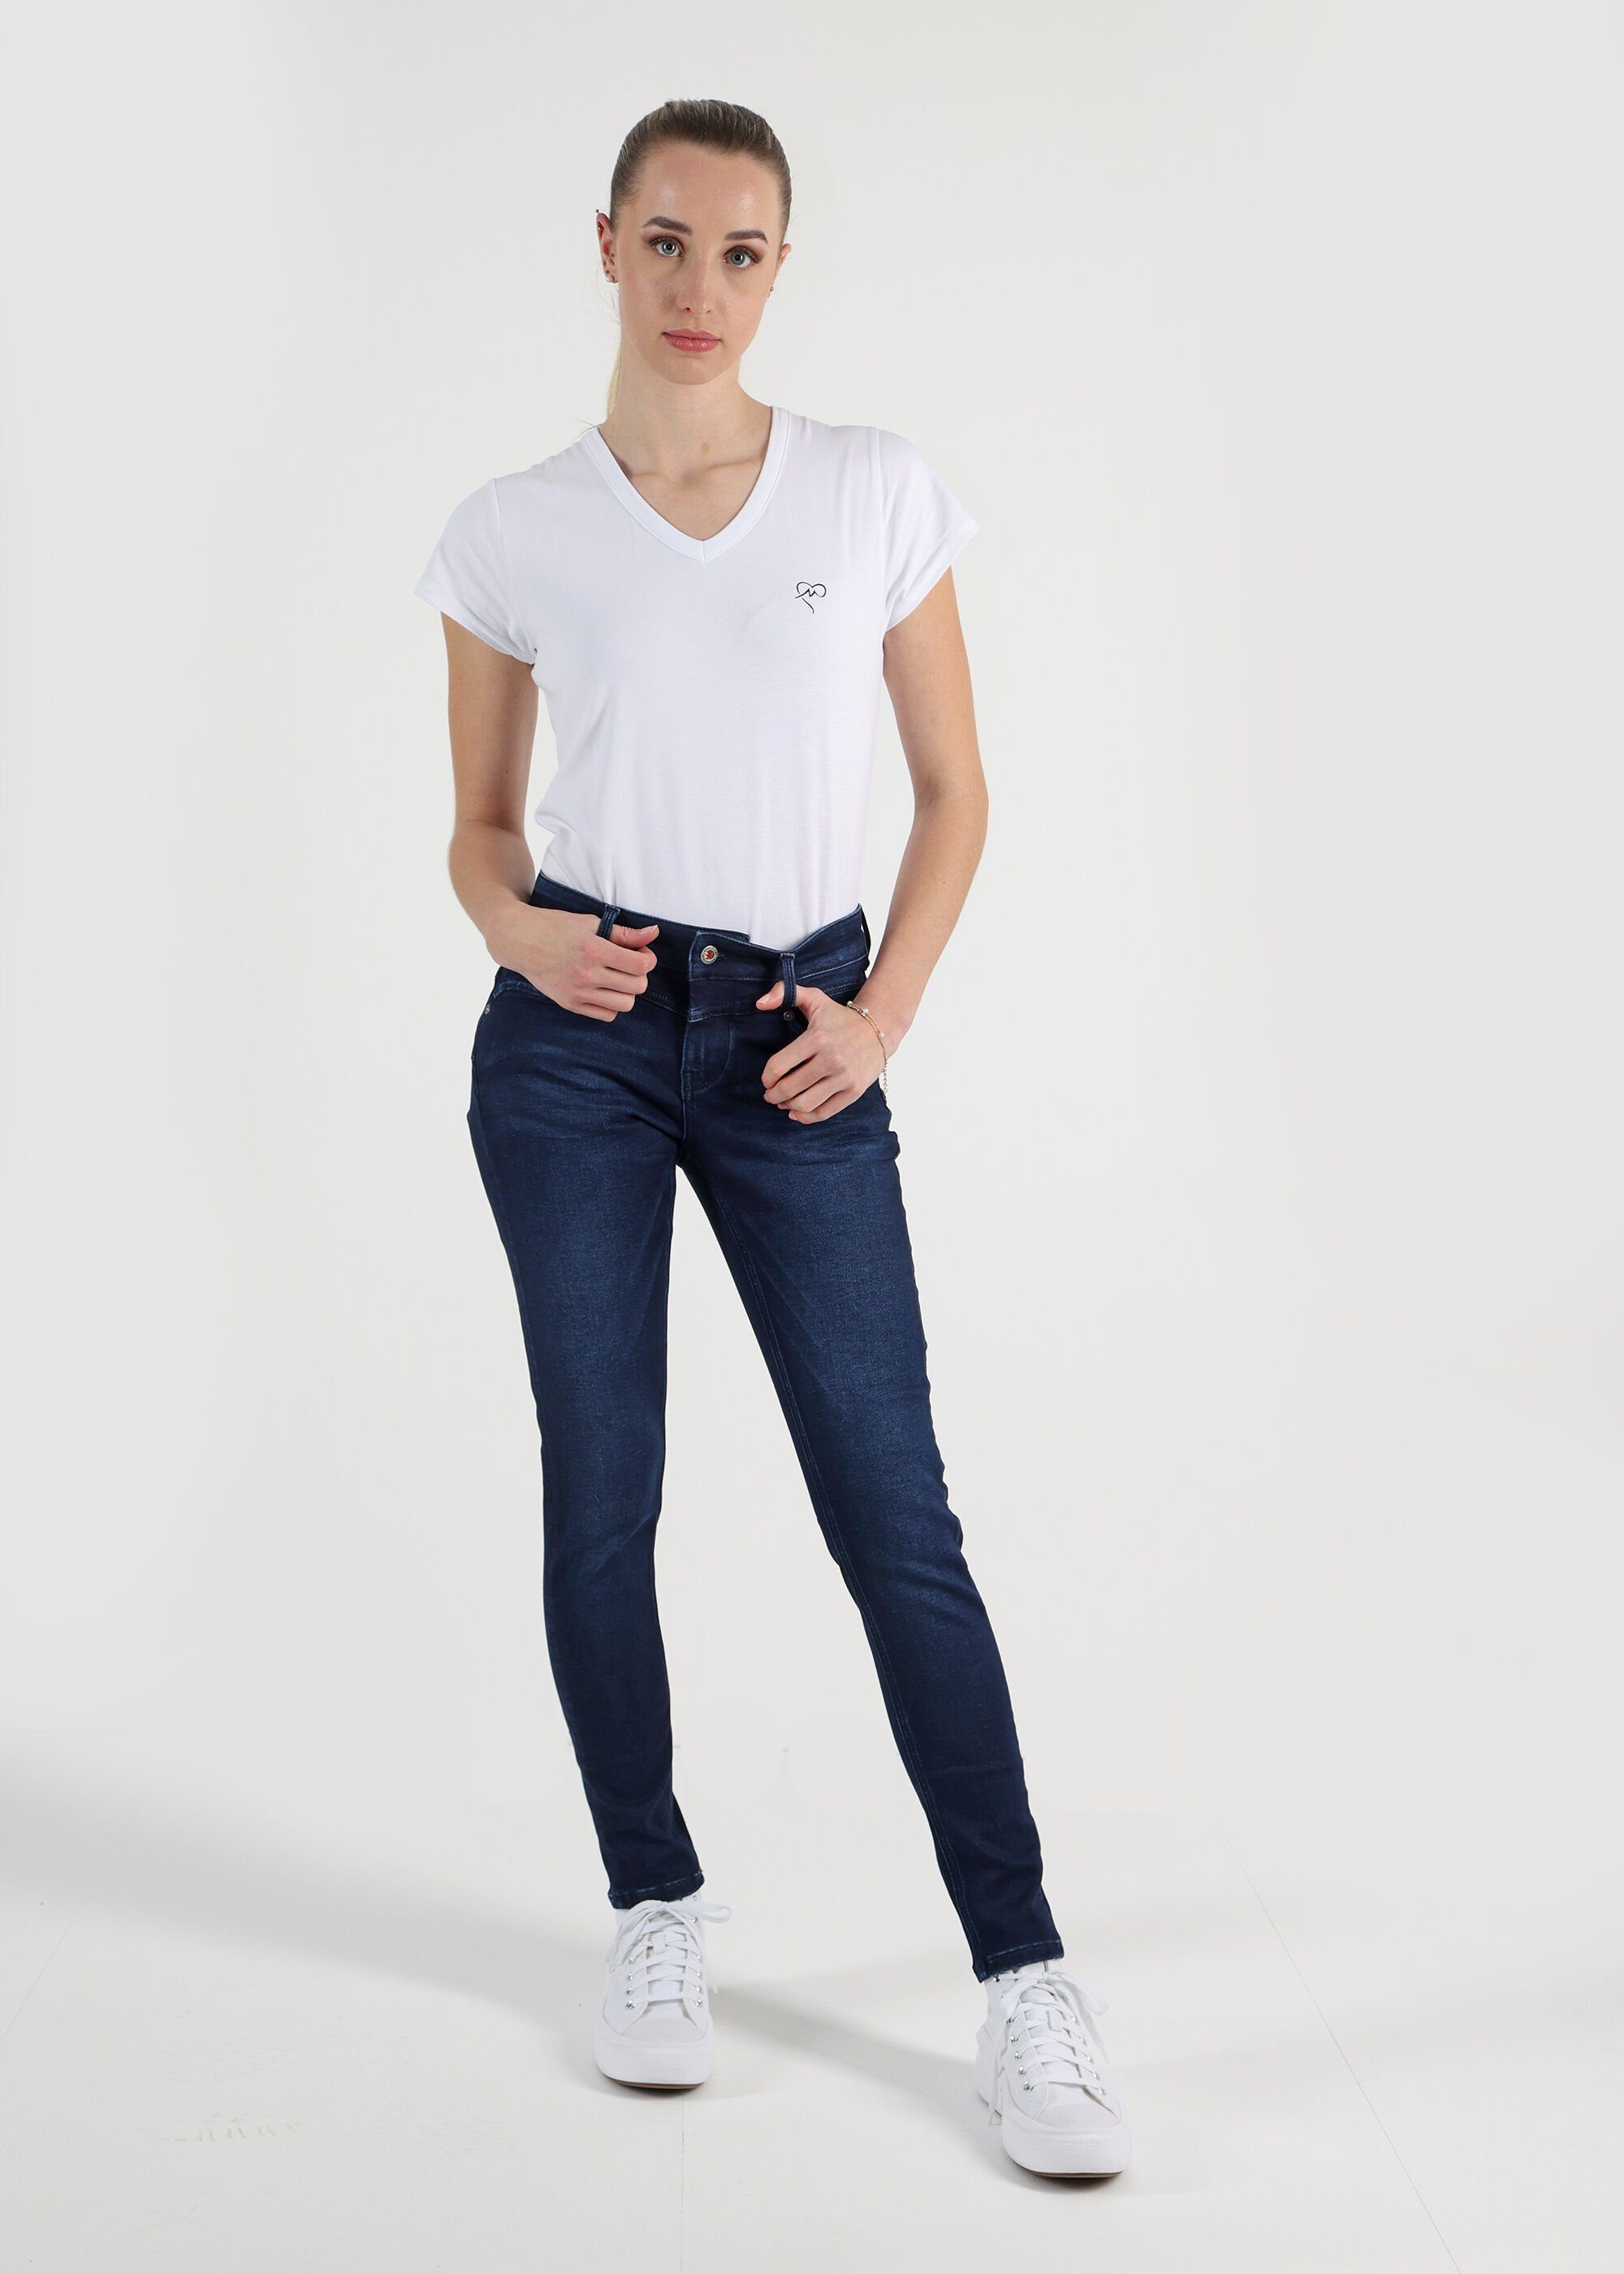 Miracle of im 3678 Denim Look Ellen Stretchy J Blue Used Skinny-fit-Jeans